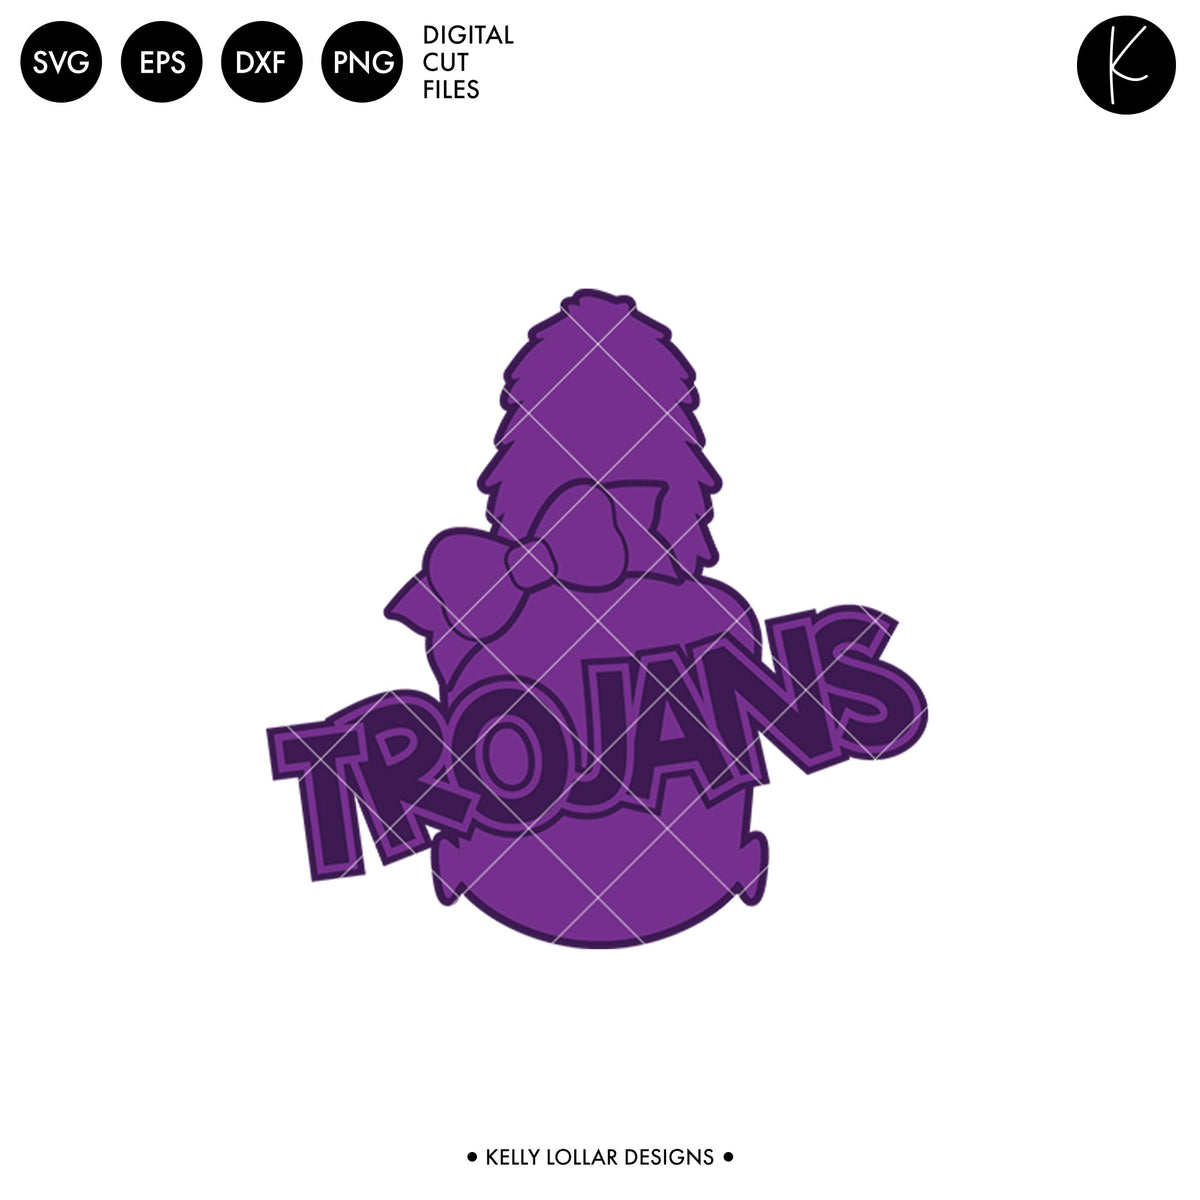 Trojans Band Bundle | SVG DXF EPS PNG Cut Files